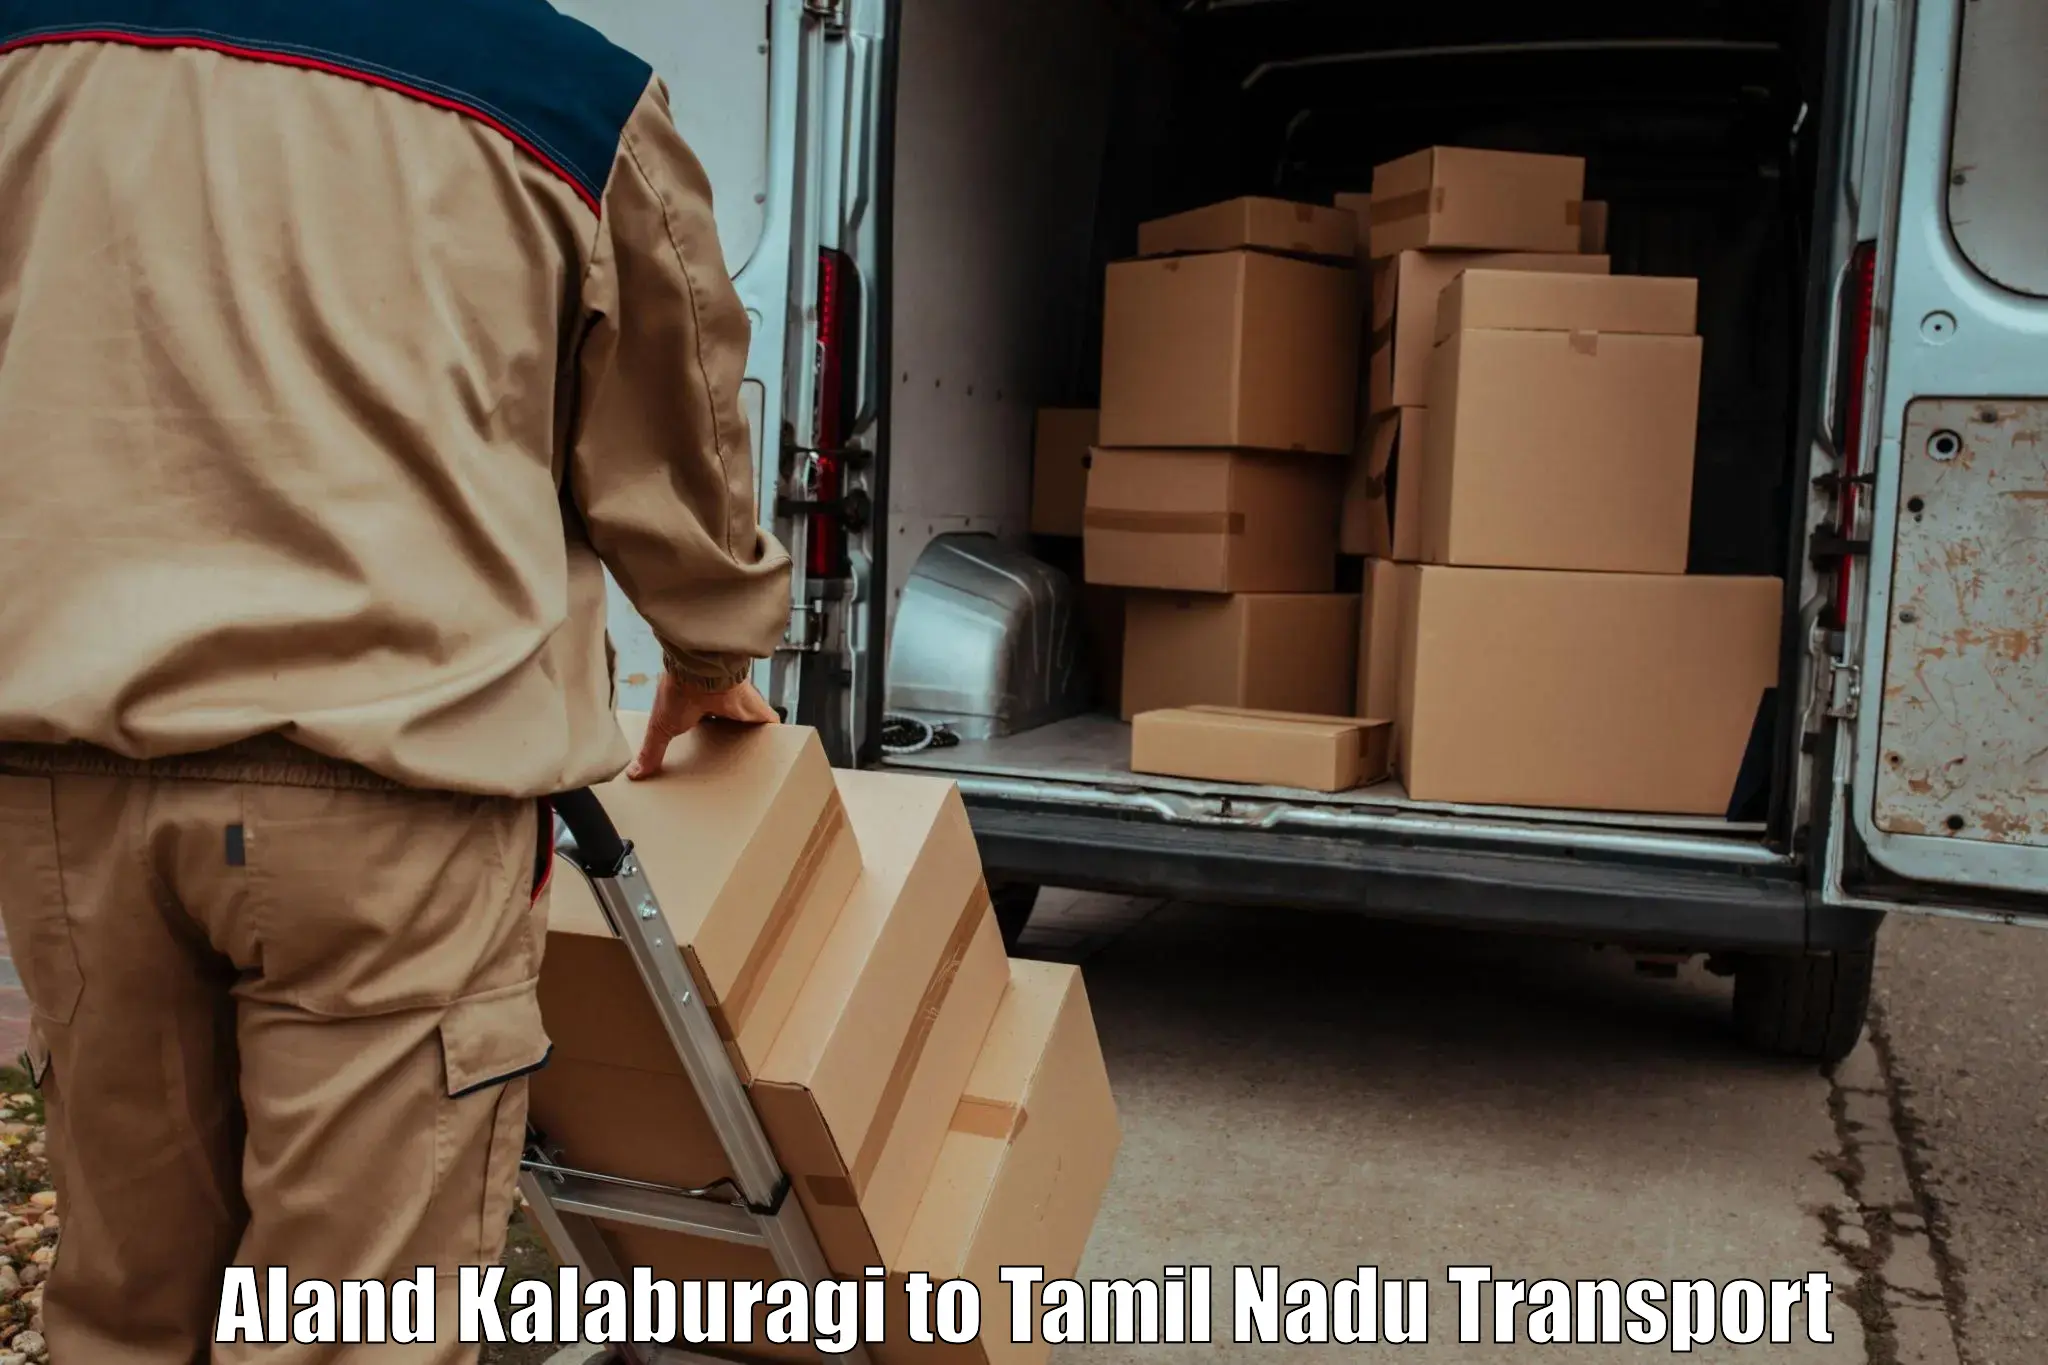 Express transport services Aland Kalaburagi to Tamil Nadu